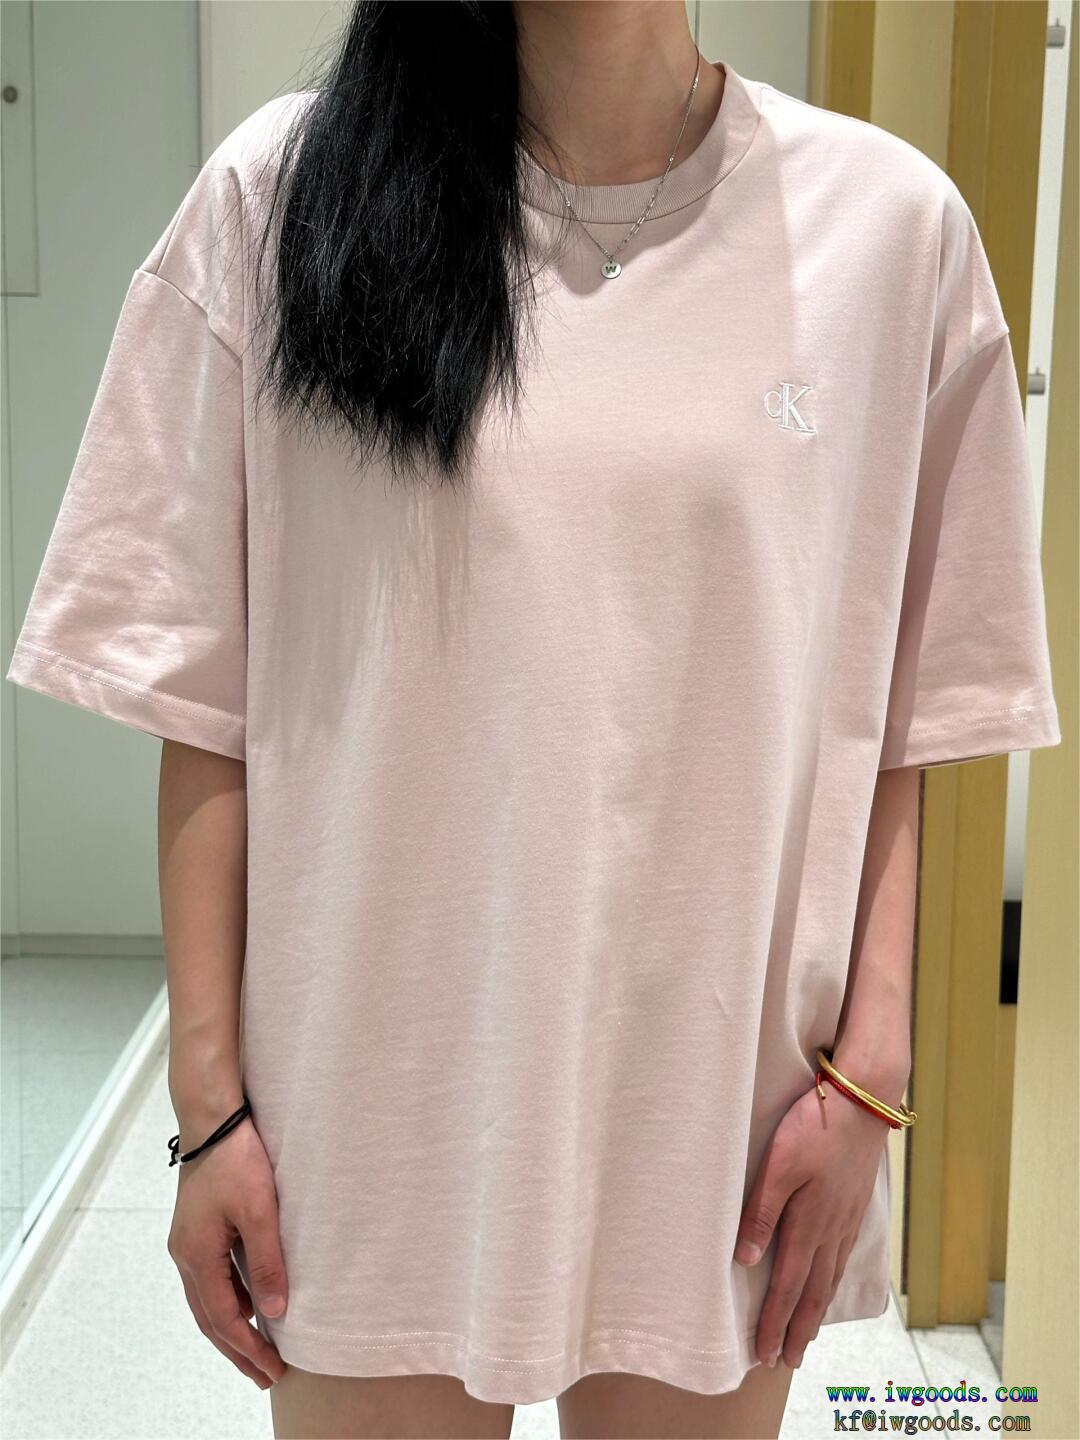 発表の新作モデル狙い目偽 ブランド 販売カルバンクライン Calvin Klein半袖Tシャツ